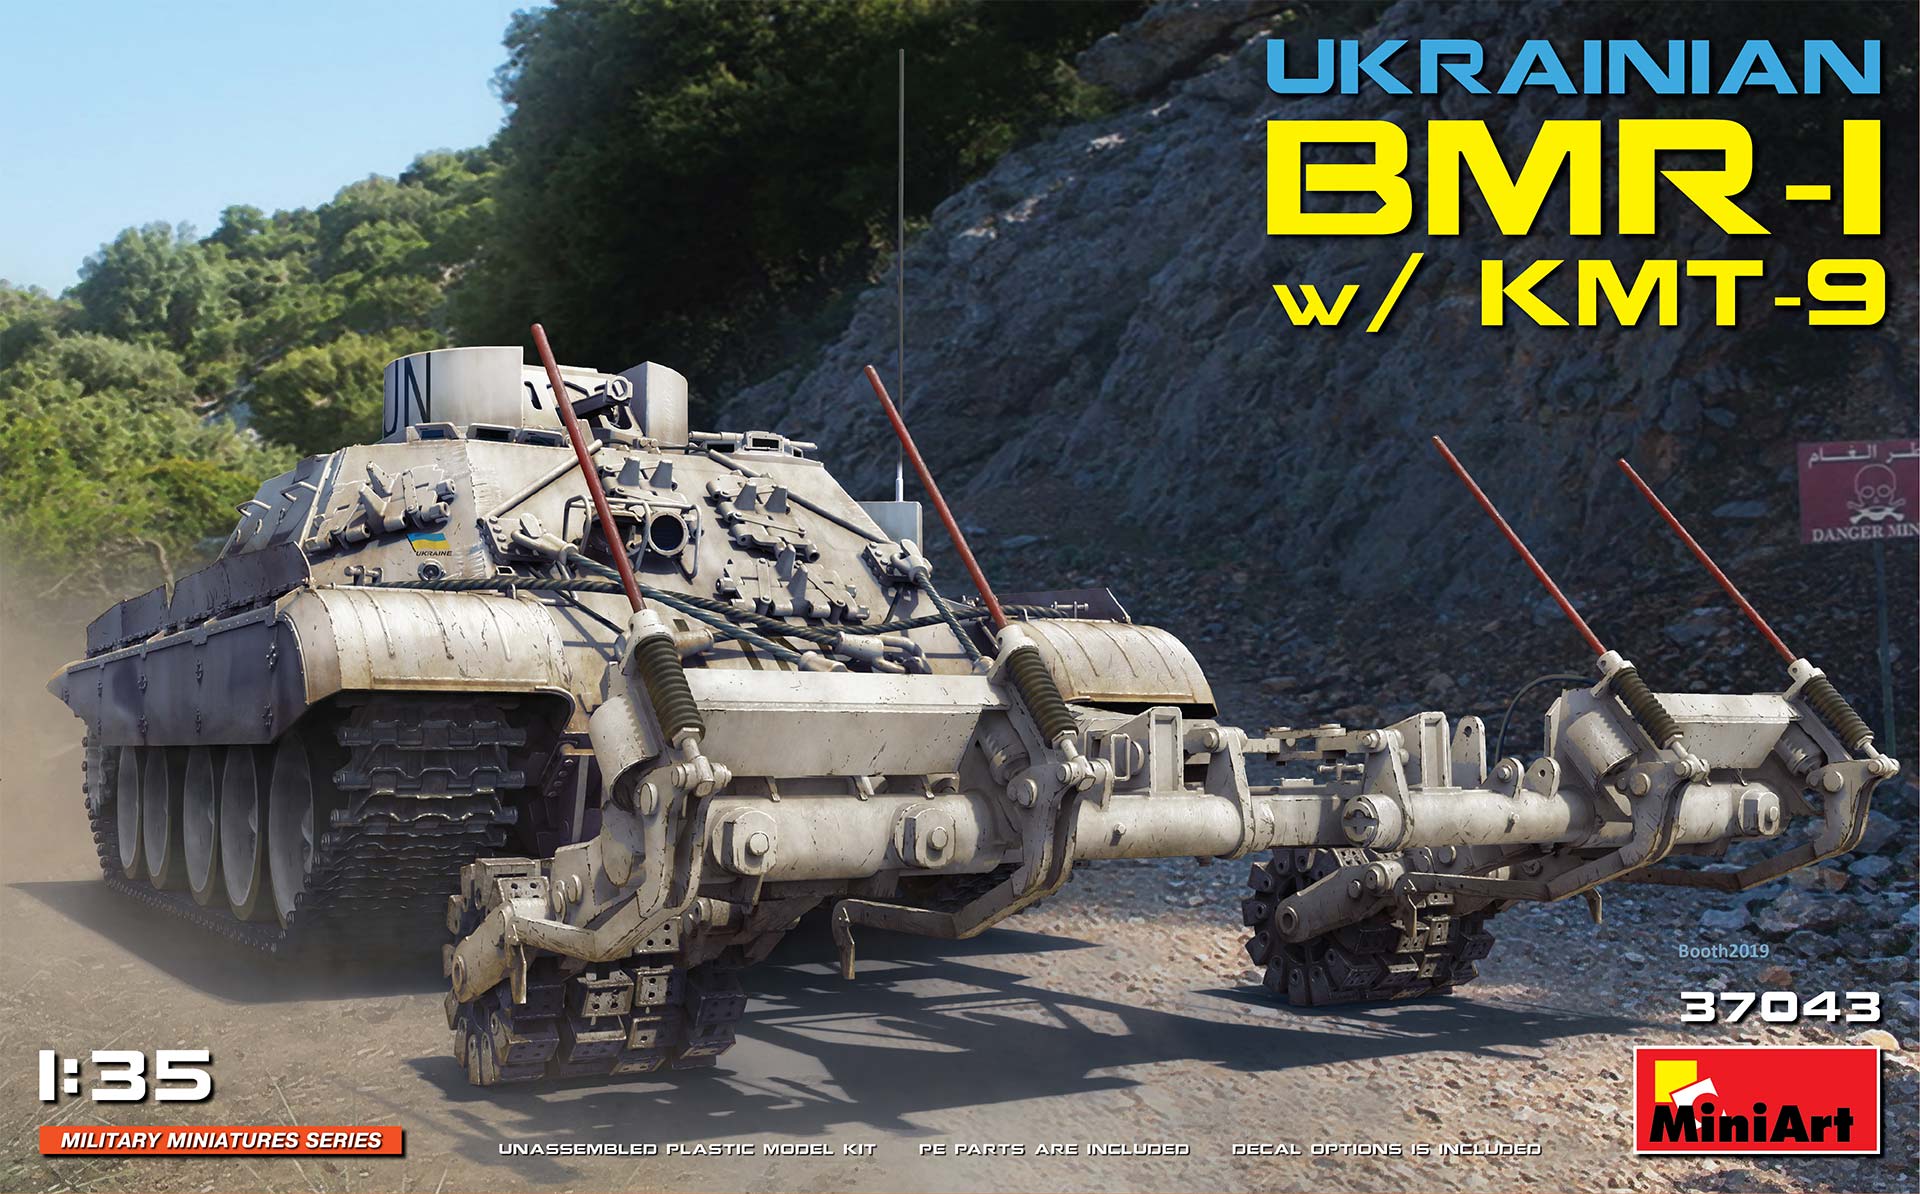 37043  техника и вооружение  Ukrainian BMR-1 with KMT-9  (1:35)